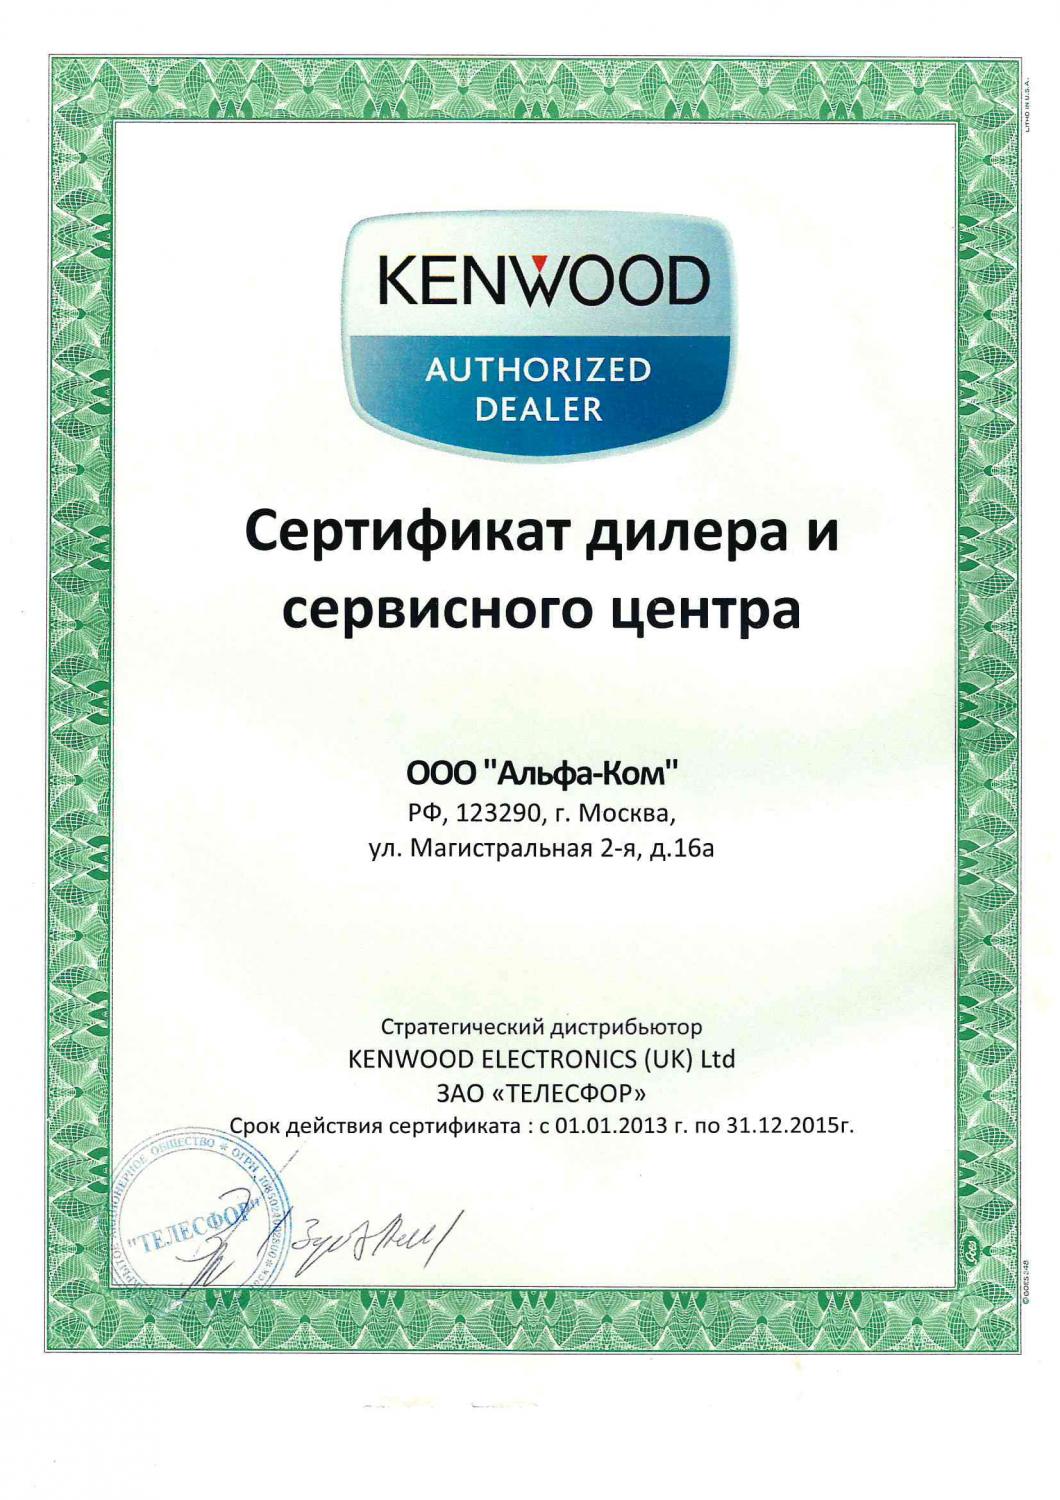 ALPHA-COM Dealer and Service Center KENWOOD 2013 - 2015